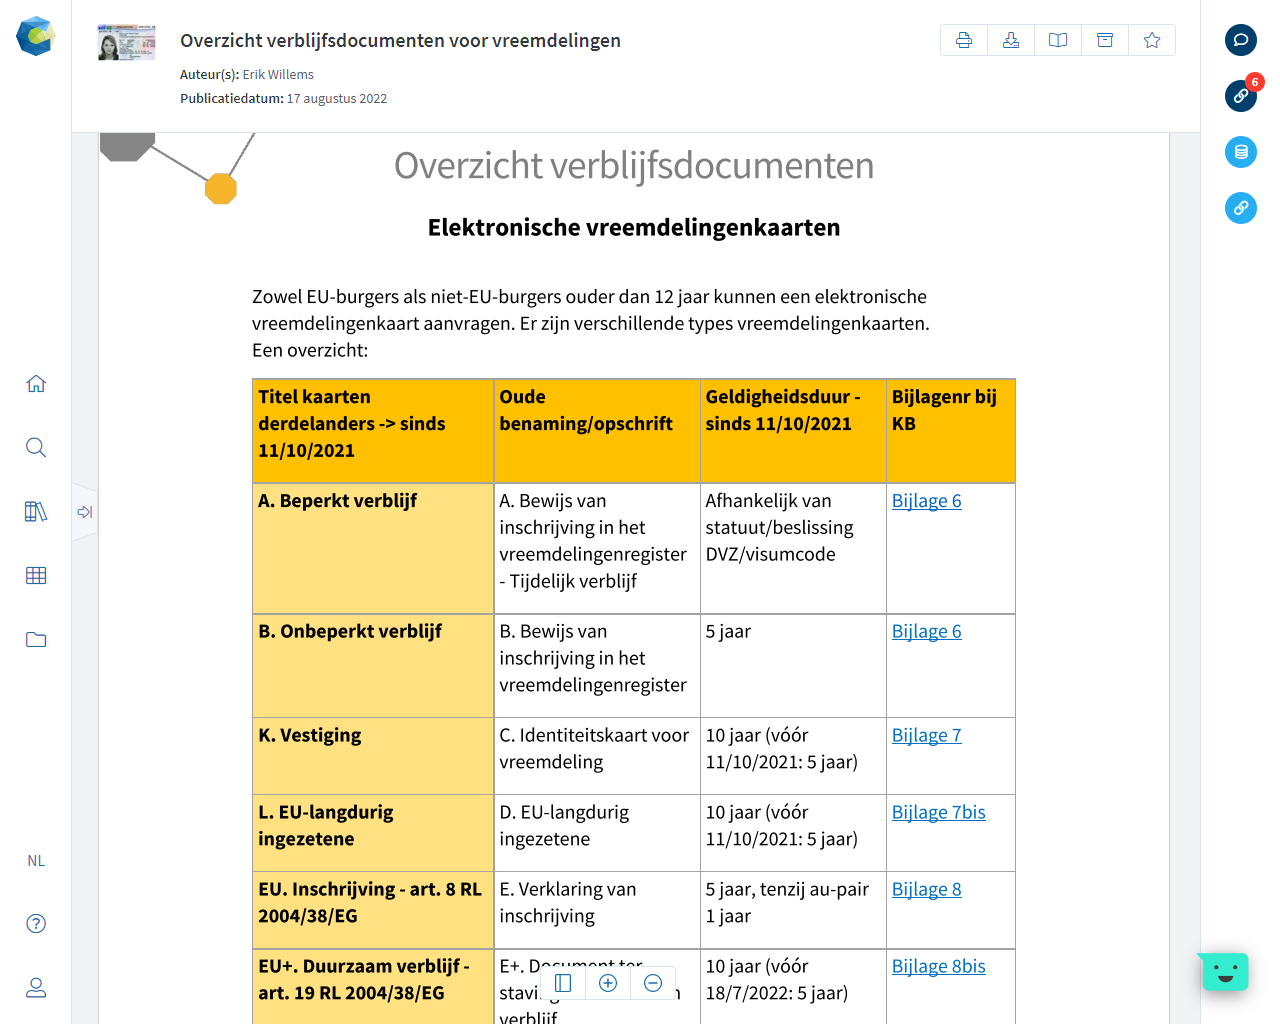 Oranjeconnect Online Bibliotheek Feature Documenten